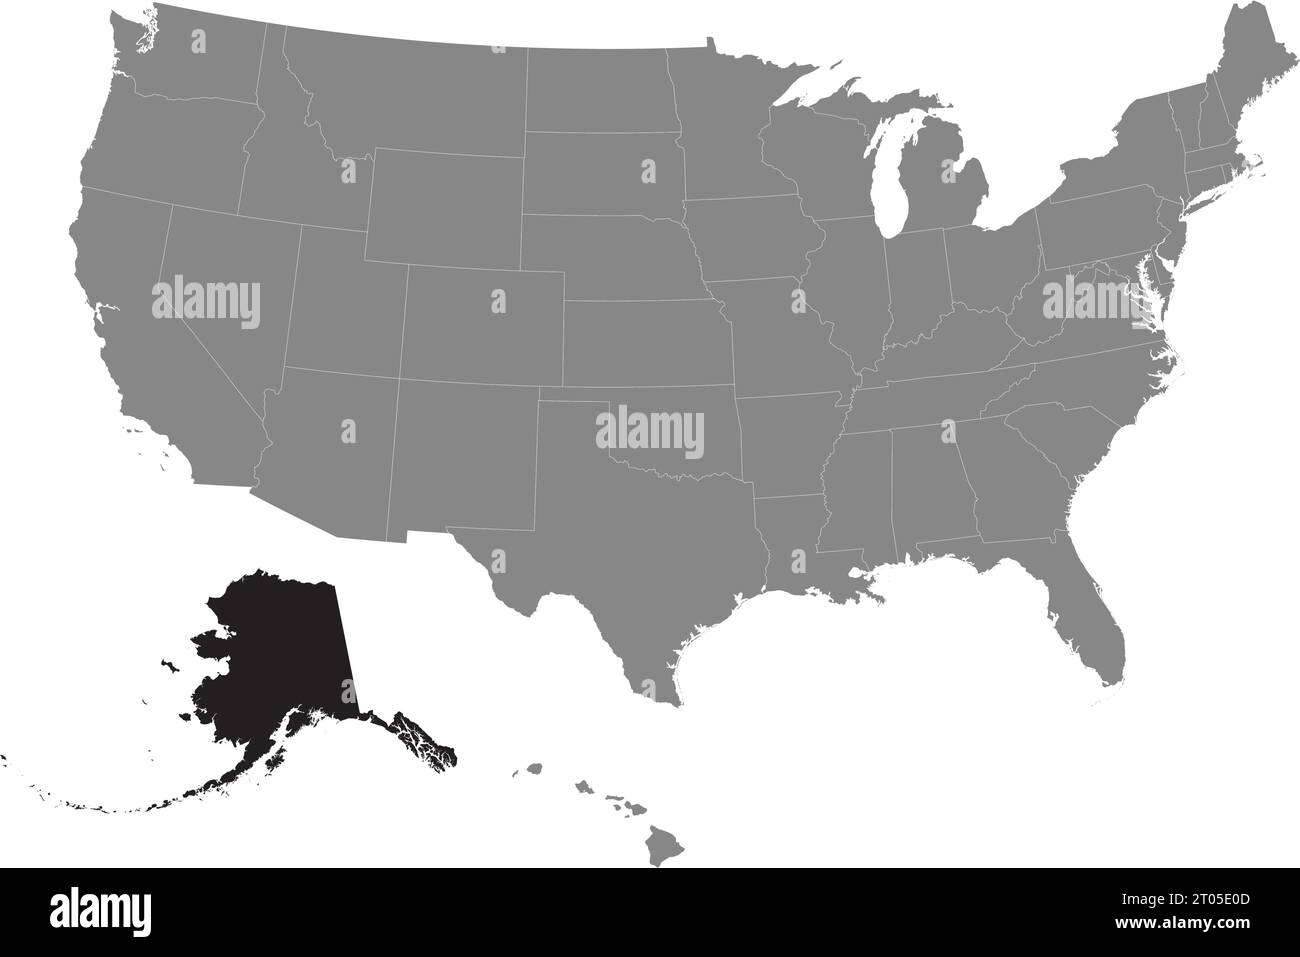 Schwarze CMYK-Bundeskarte von ALASKA in detaillierter grauer, leerer politischer Karte der Vereinigten Staaten von Amerika auf transparentem Hintergrund Stock Vektor